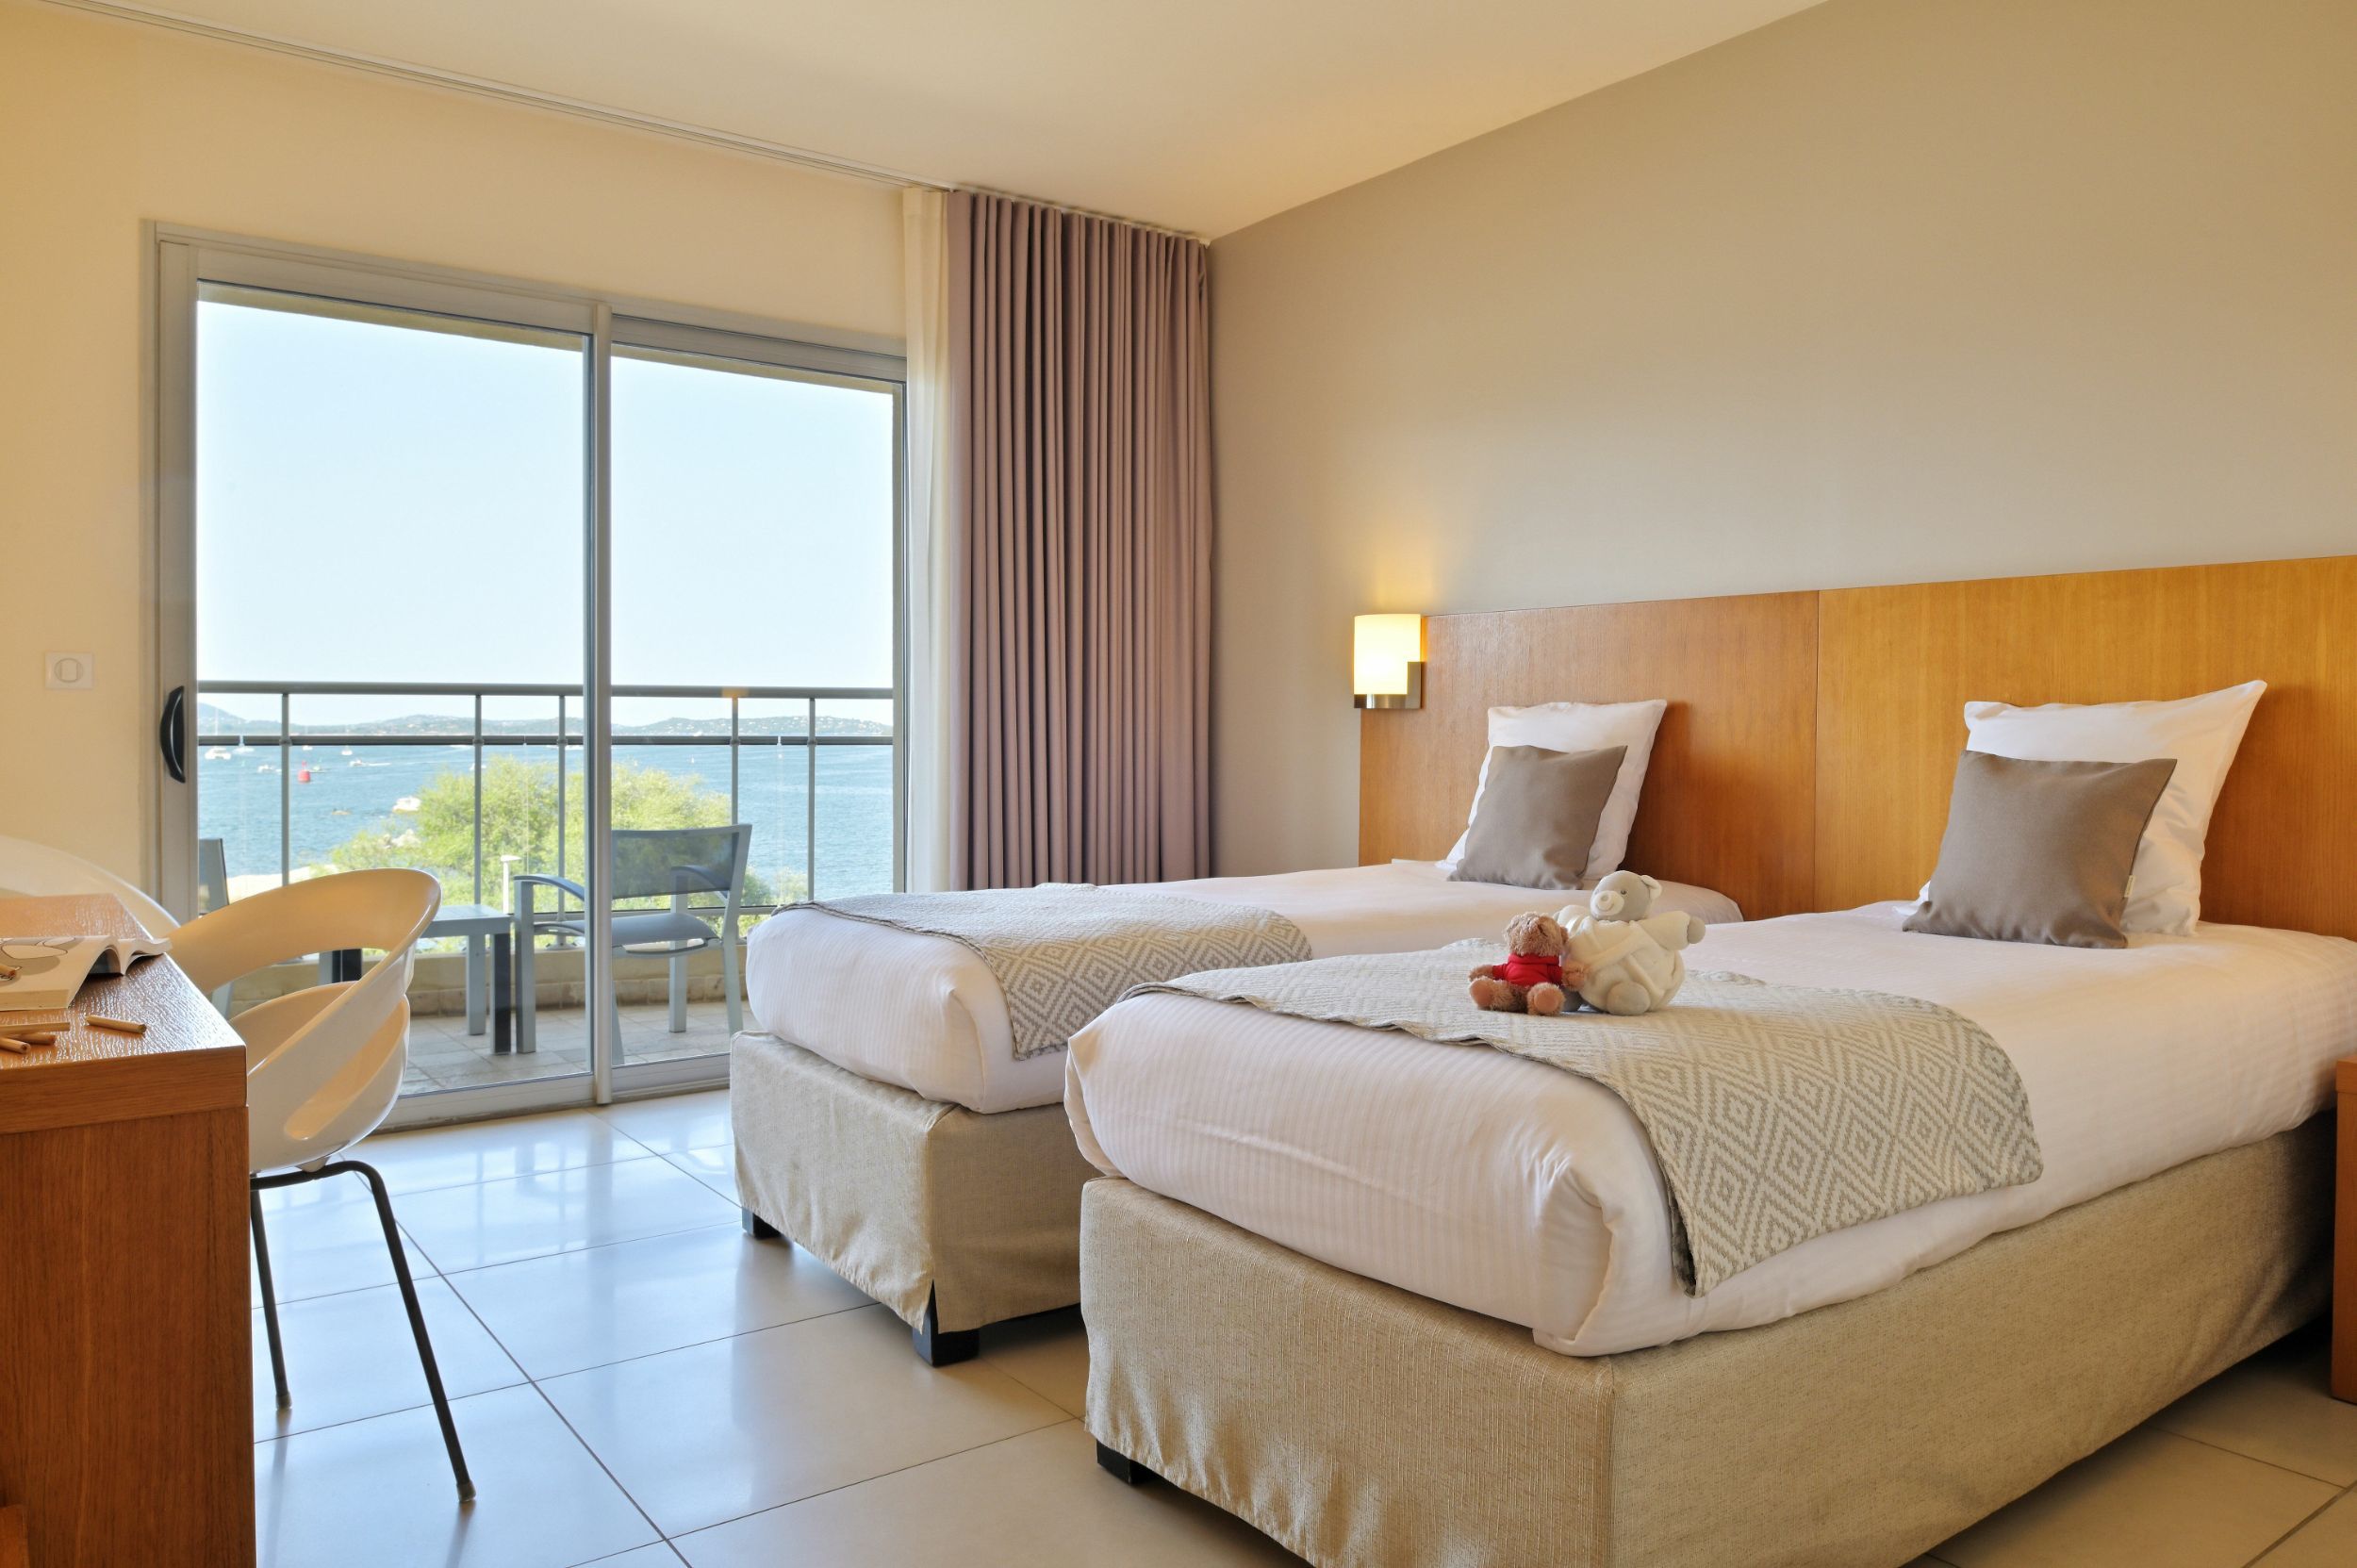 Une chambre d'hôtel avec vue marais salants à Porto-Vecchio | Hôtel Costa Salina